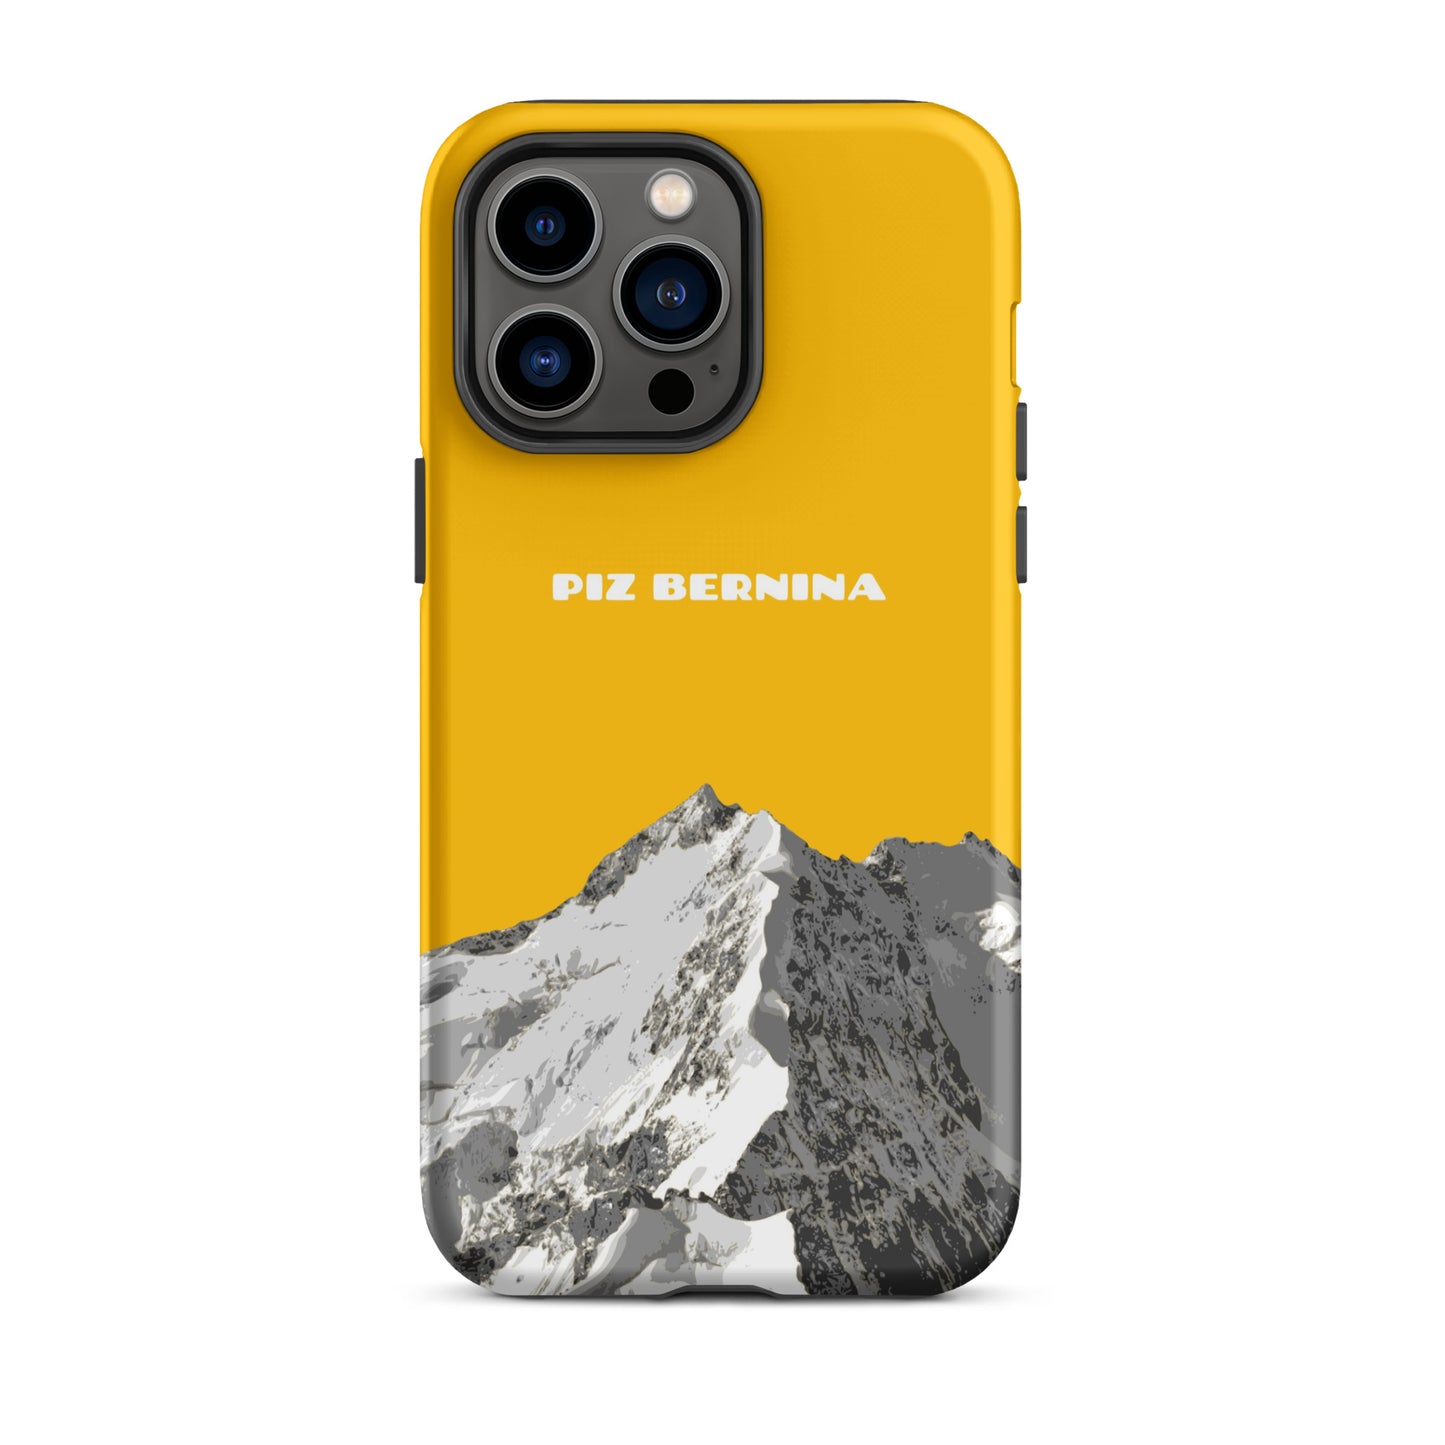 Hülle für das iPhone 14 Pro Max von Apple in der Farbe Goldgelb, dass den Piz Bernina in Graubünden zeigt.